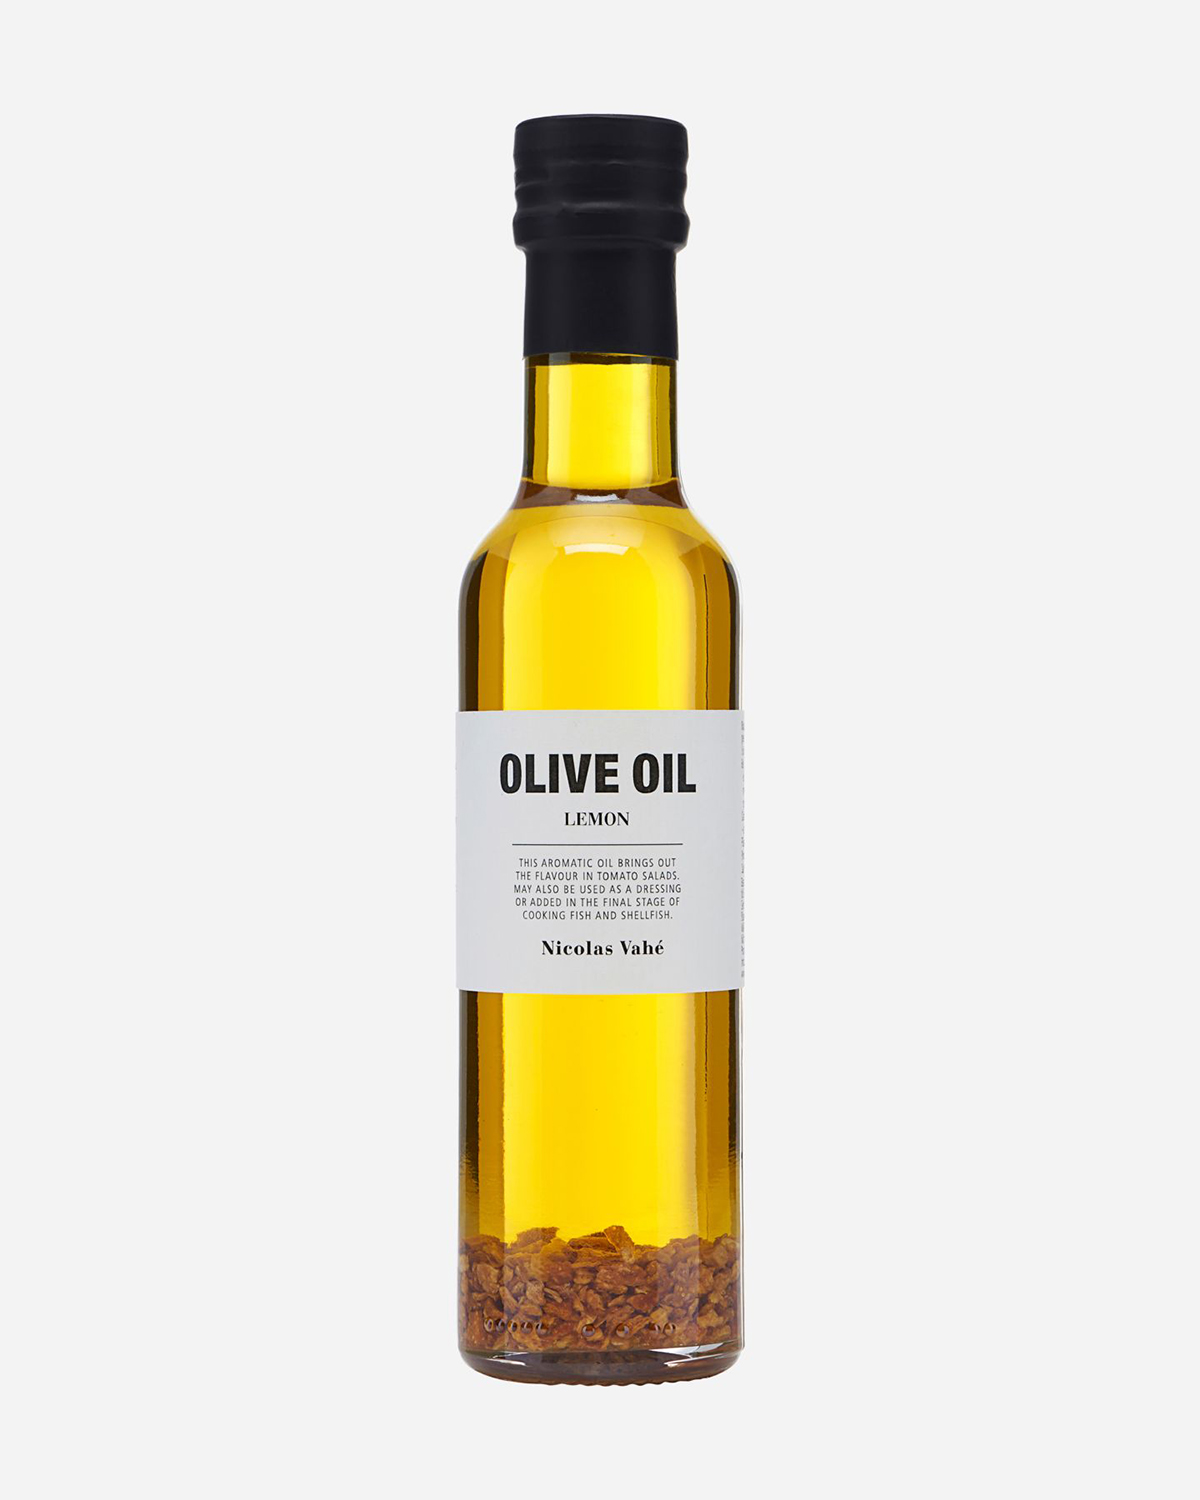 Olive oil, Lemon, 25 cl.